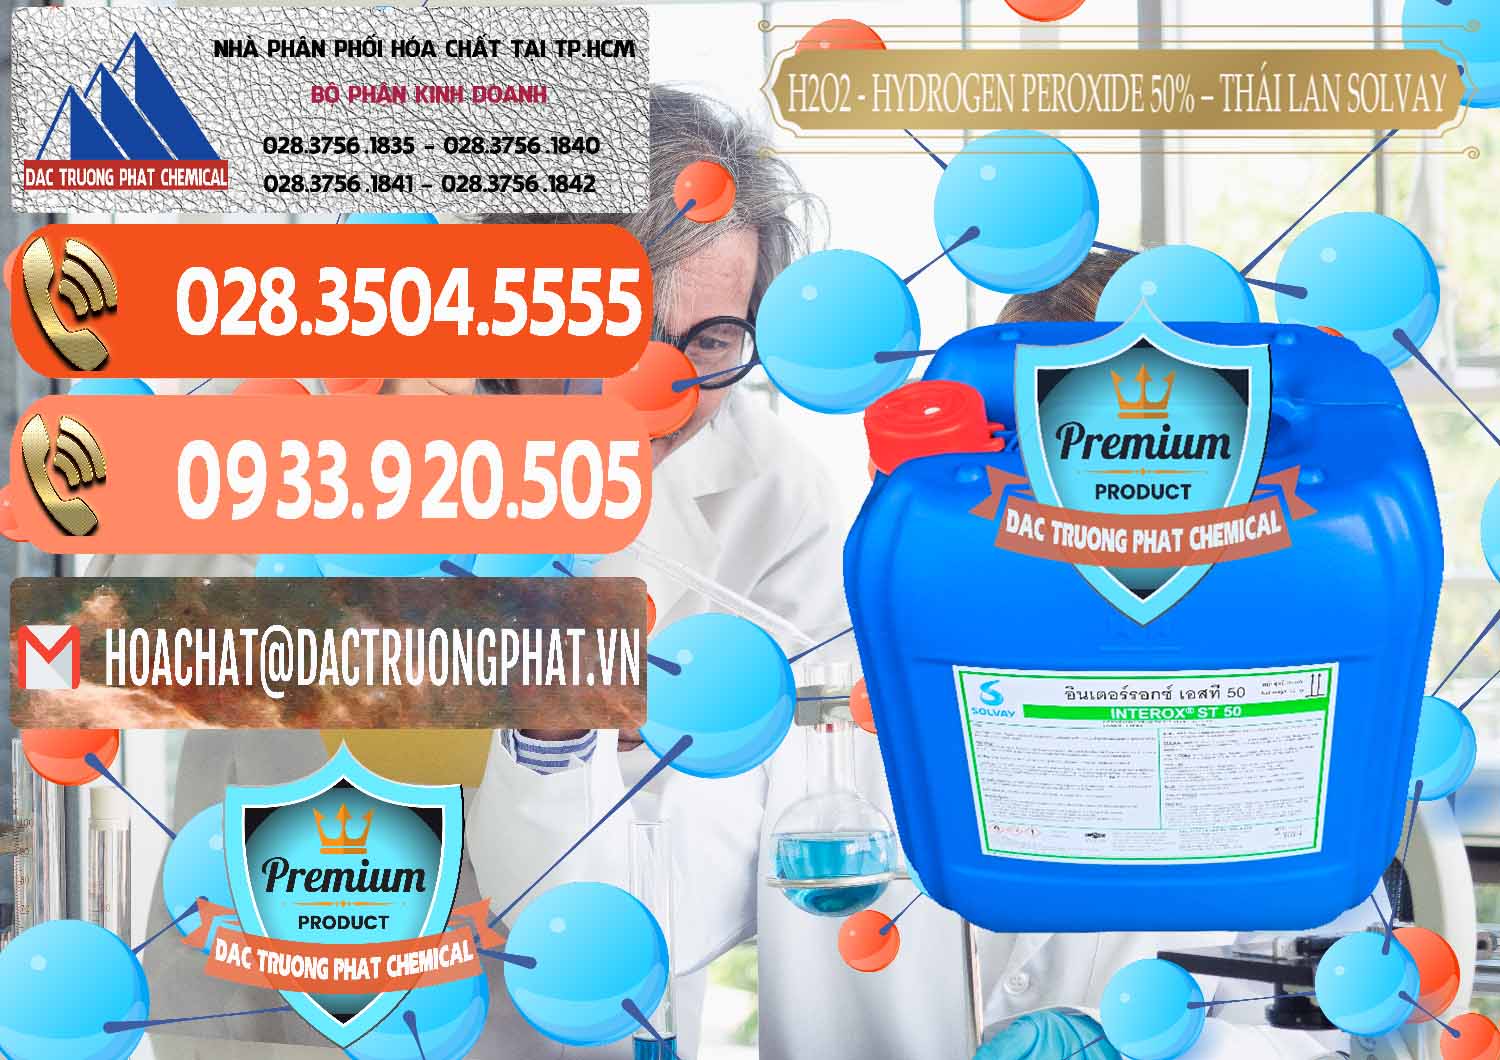 Cty cung cấp & bán H2O2 - Hydrogen Peroxide 50% Thái Lan Solvay - 0068 - Nhà nhập khẩu và phân phối hóa chất tại TP.HCM - hoachatmientay.com